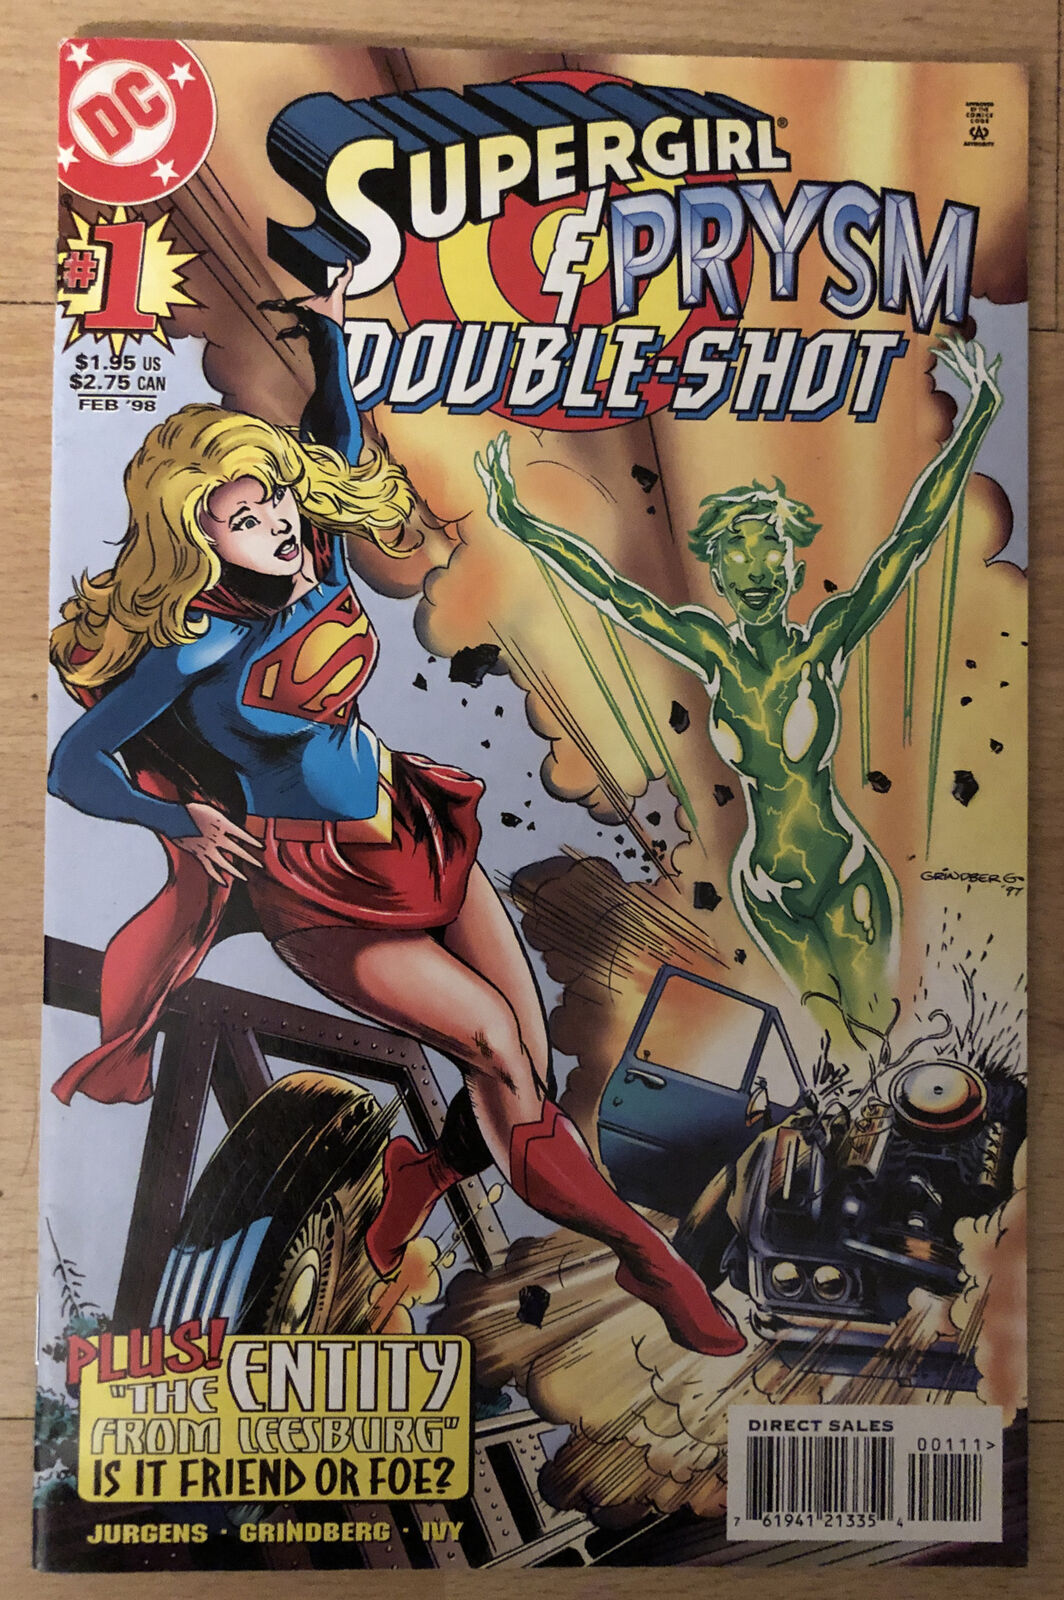 Supergirl Prism Double 1; Apps: Fringe & Jugular; Ads Cal Ripken Jr & James Bond